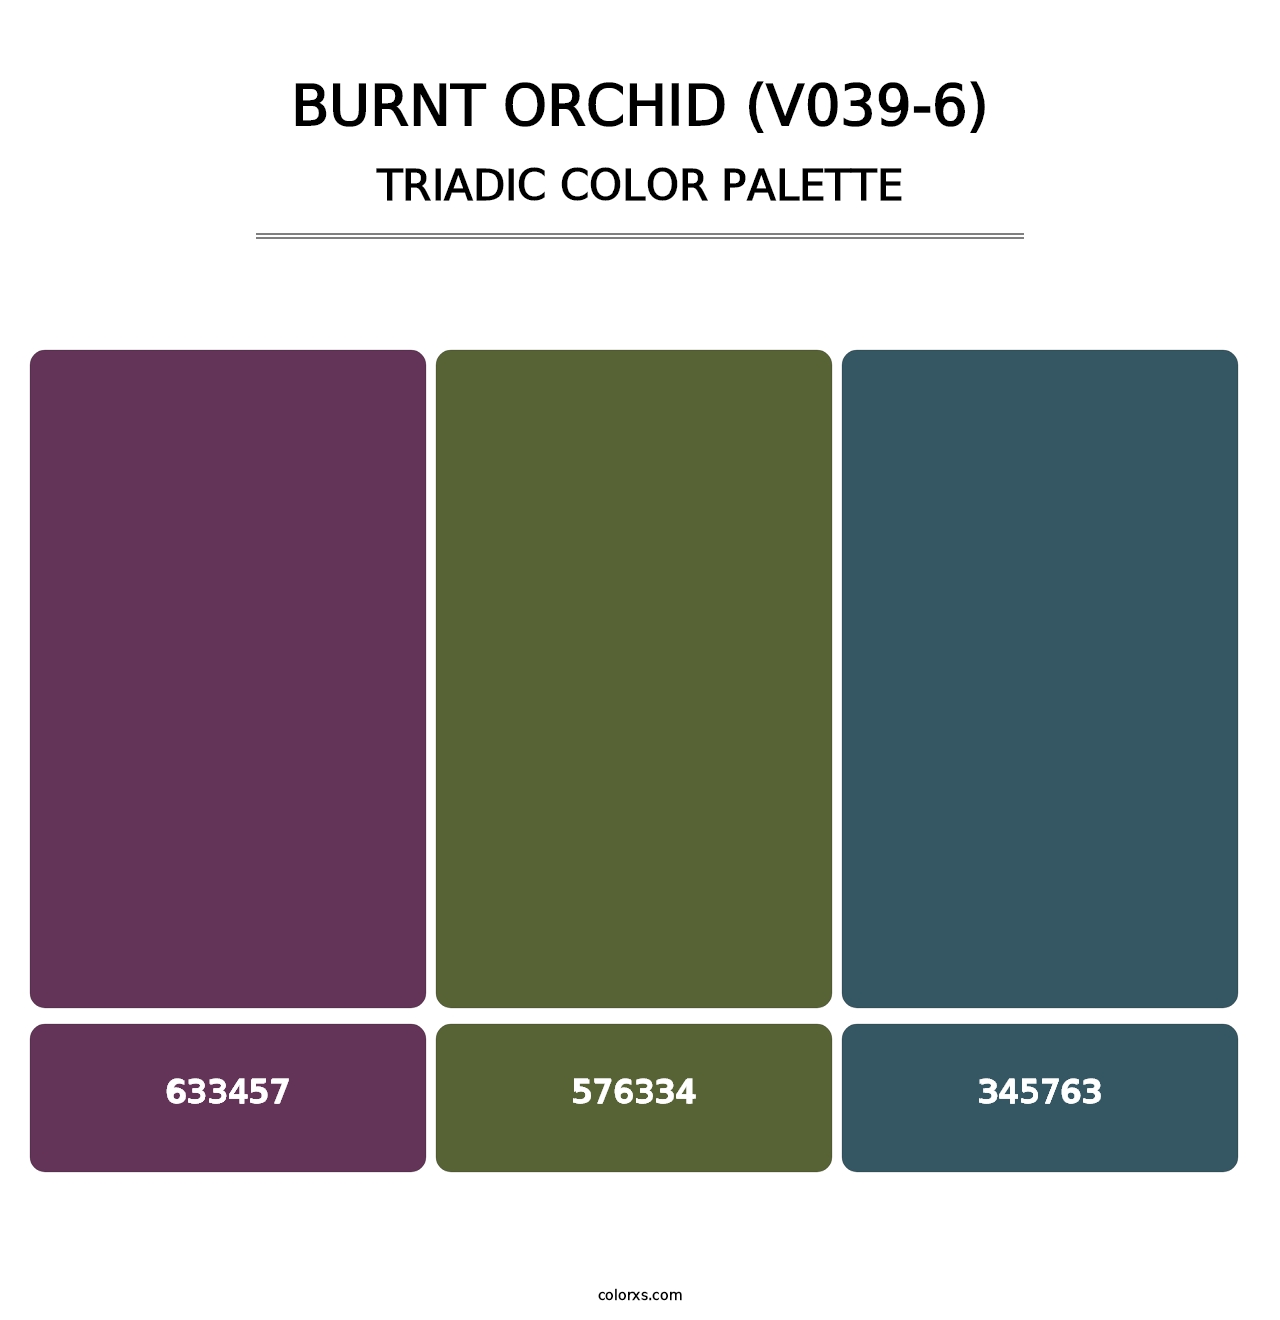 Burnt Orchid (V039-6) - Triadic Color Palette